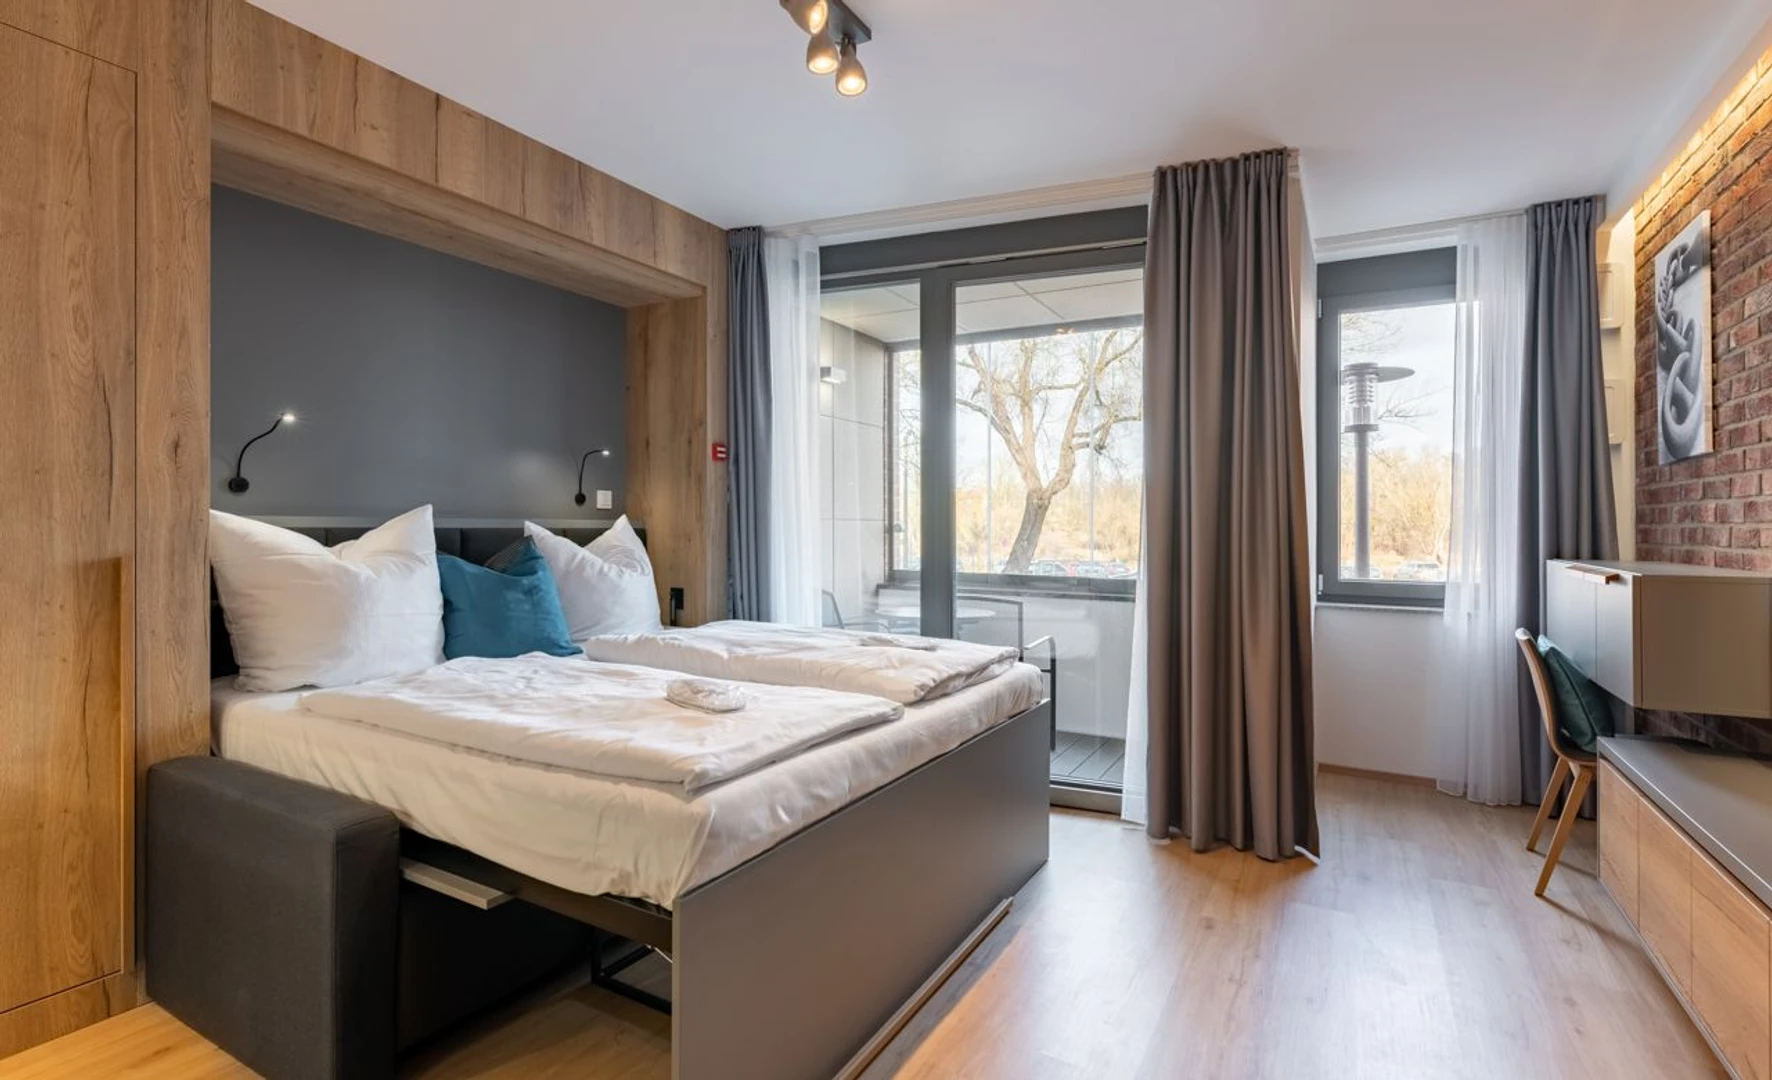 Habitación en alquiler con cama doble Regensburg